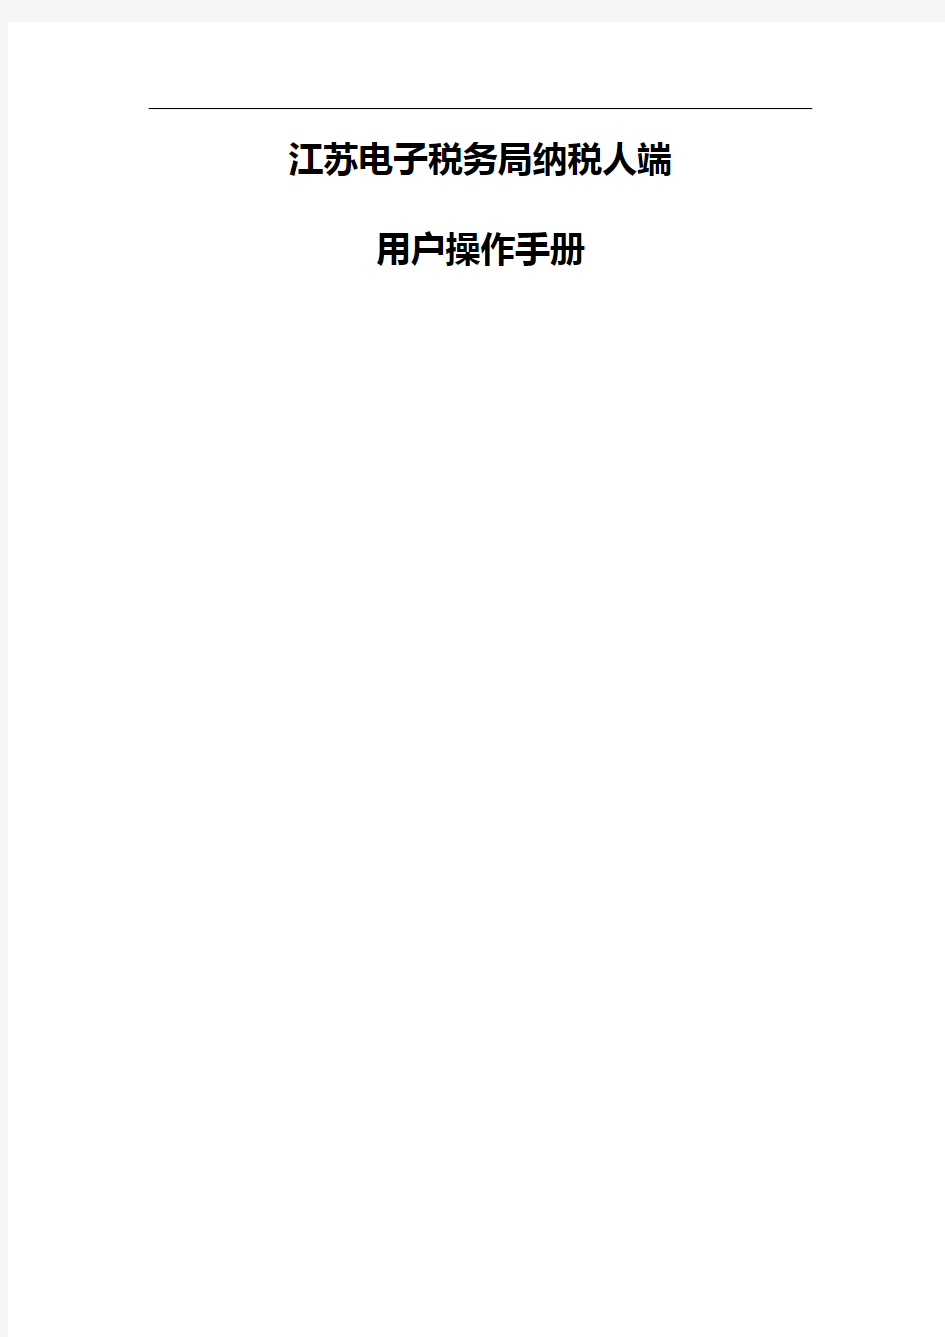 【精品】江苏电子税务局纳税人端网络发票操作手册